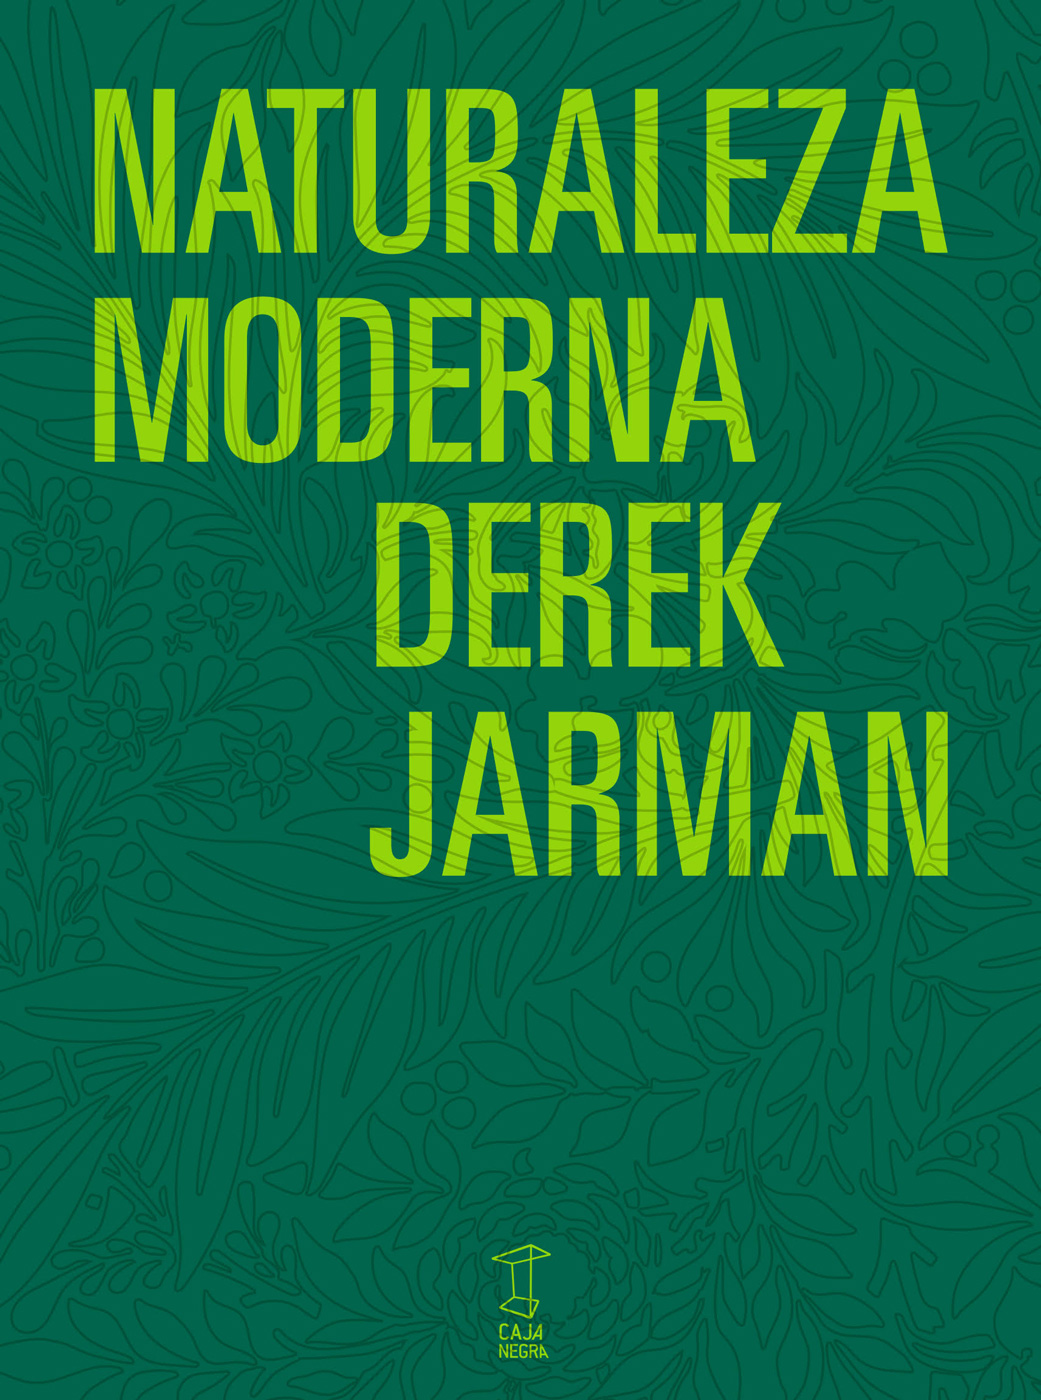 Libros octubre 2019. Jarman